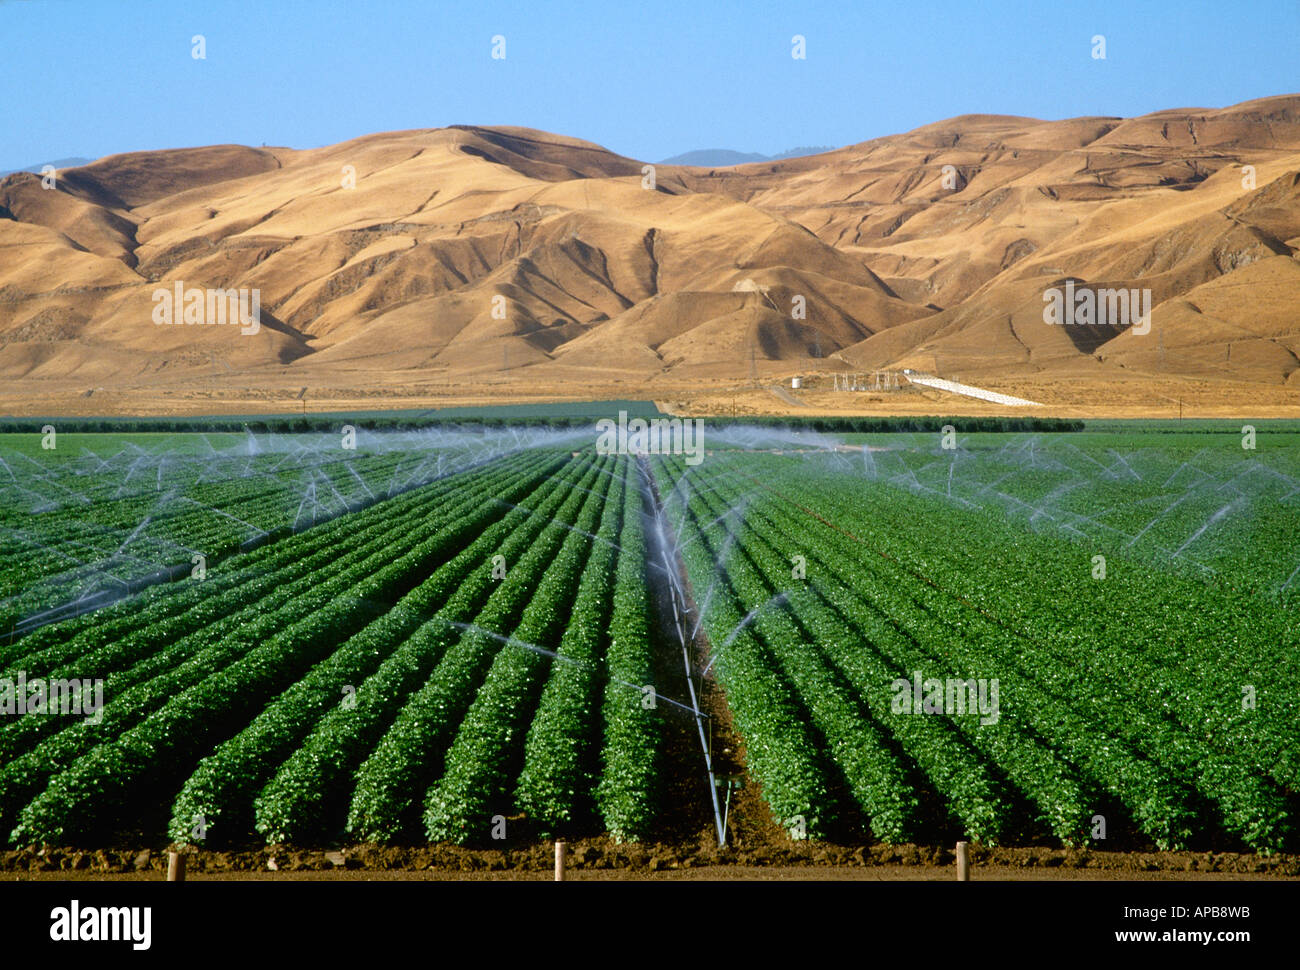 Сельское хозяйство саудовской аравии. Сельское хозяйство Израиля рукотворное чудо. Саудовская Аравия поливные поля. Оазисное земледелие ОАЭ.